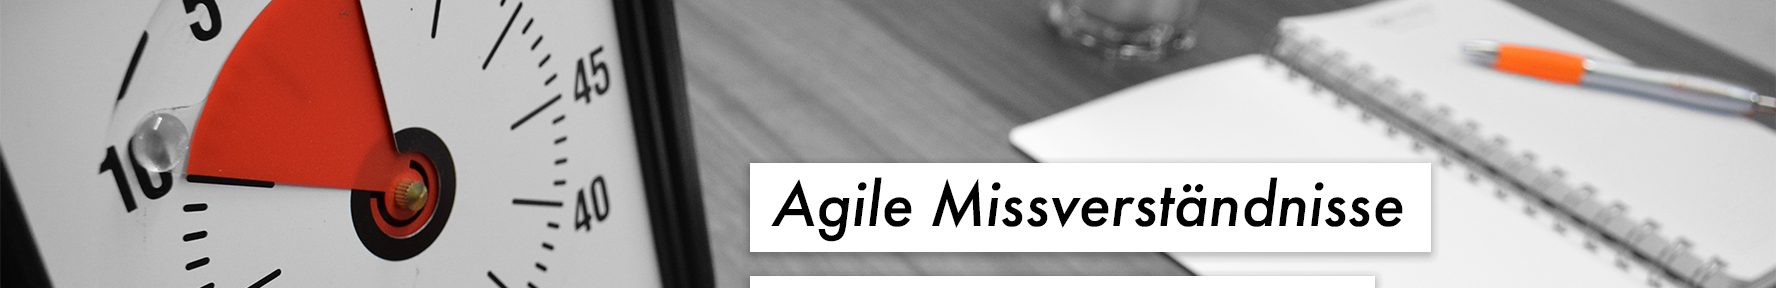 Agile Missverständnisse: Schneller mit Agil